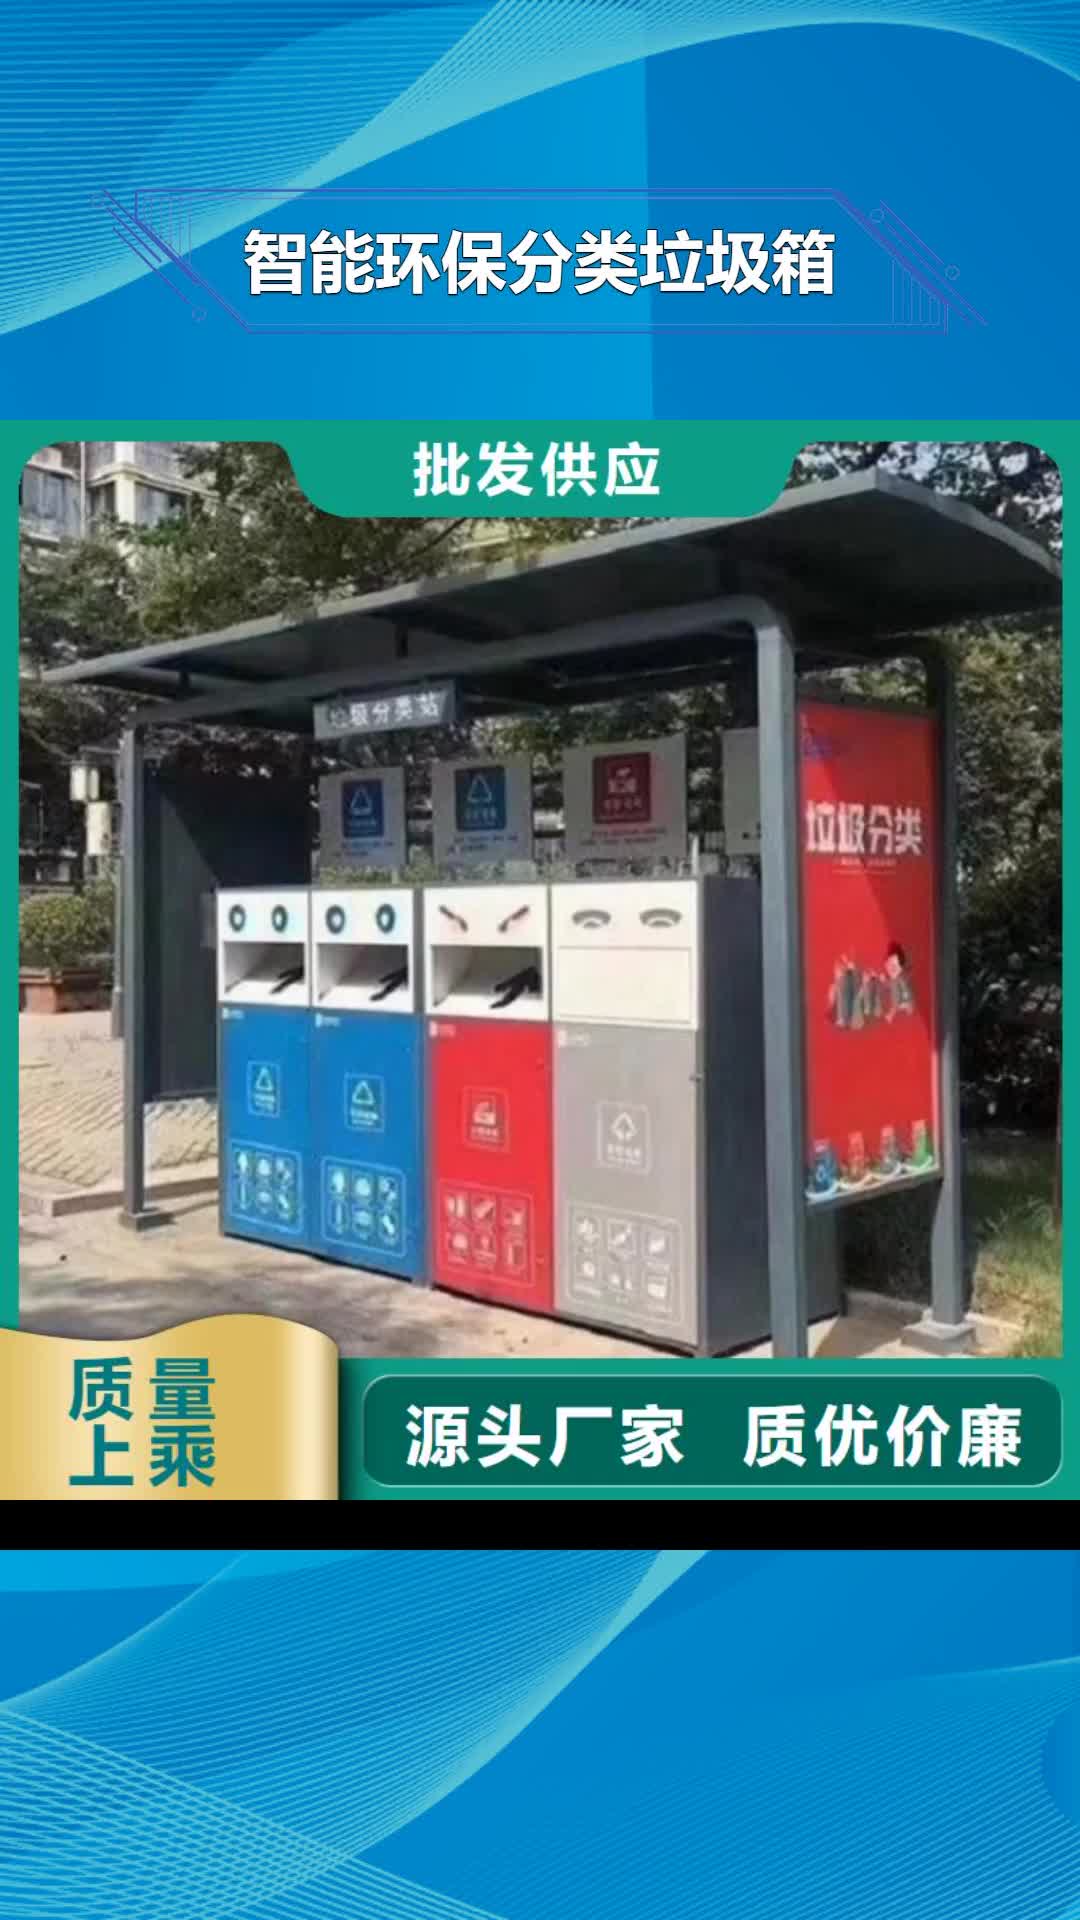 锦州 智能环保分类垃圾箱【社区阅报栏灯箱】一手货源